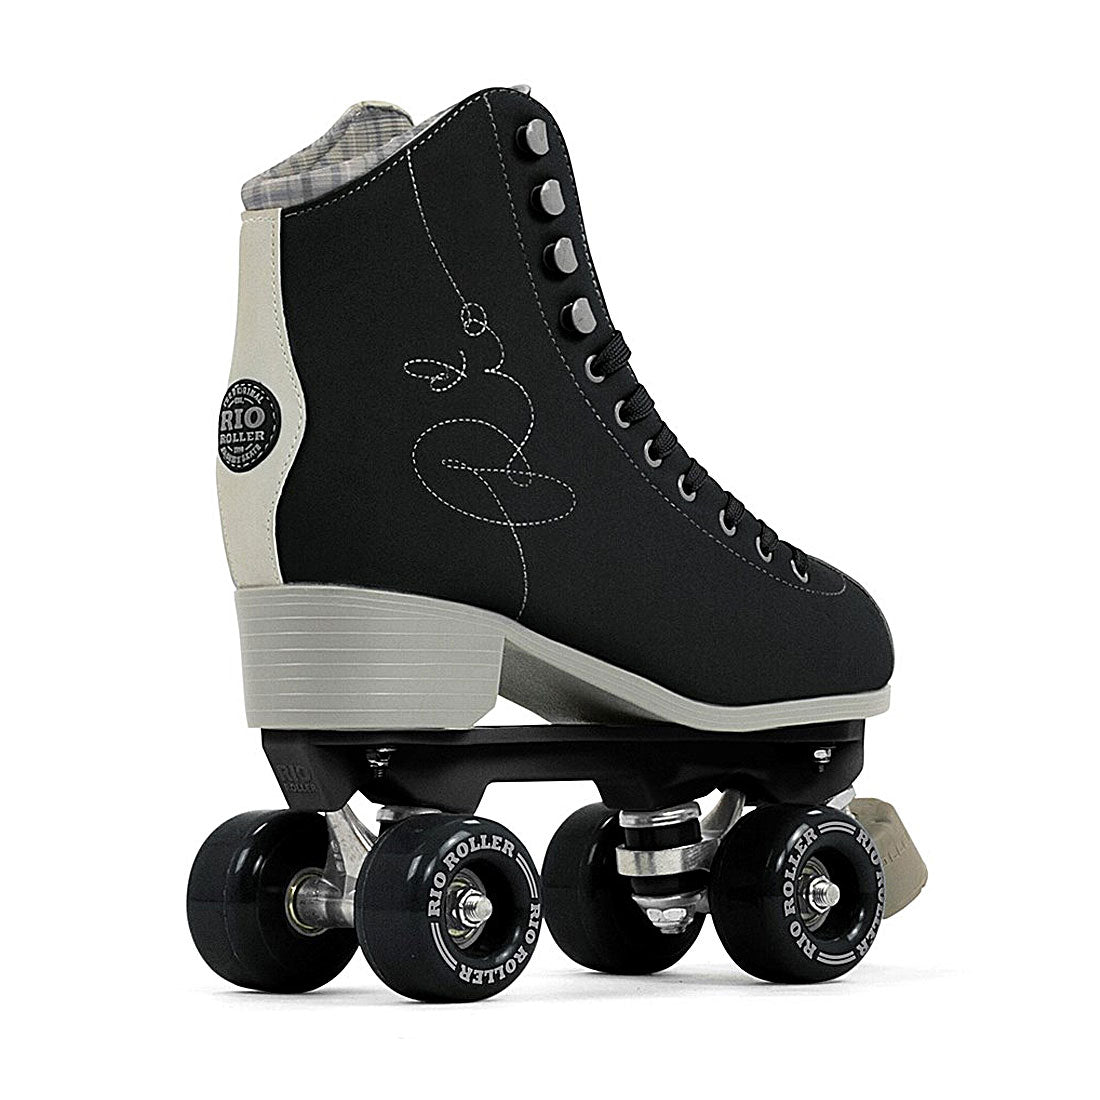 Rio Roller Signature - Black Roller Skates